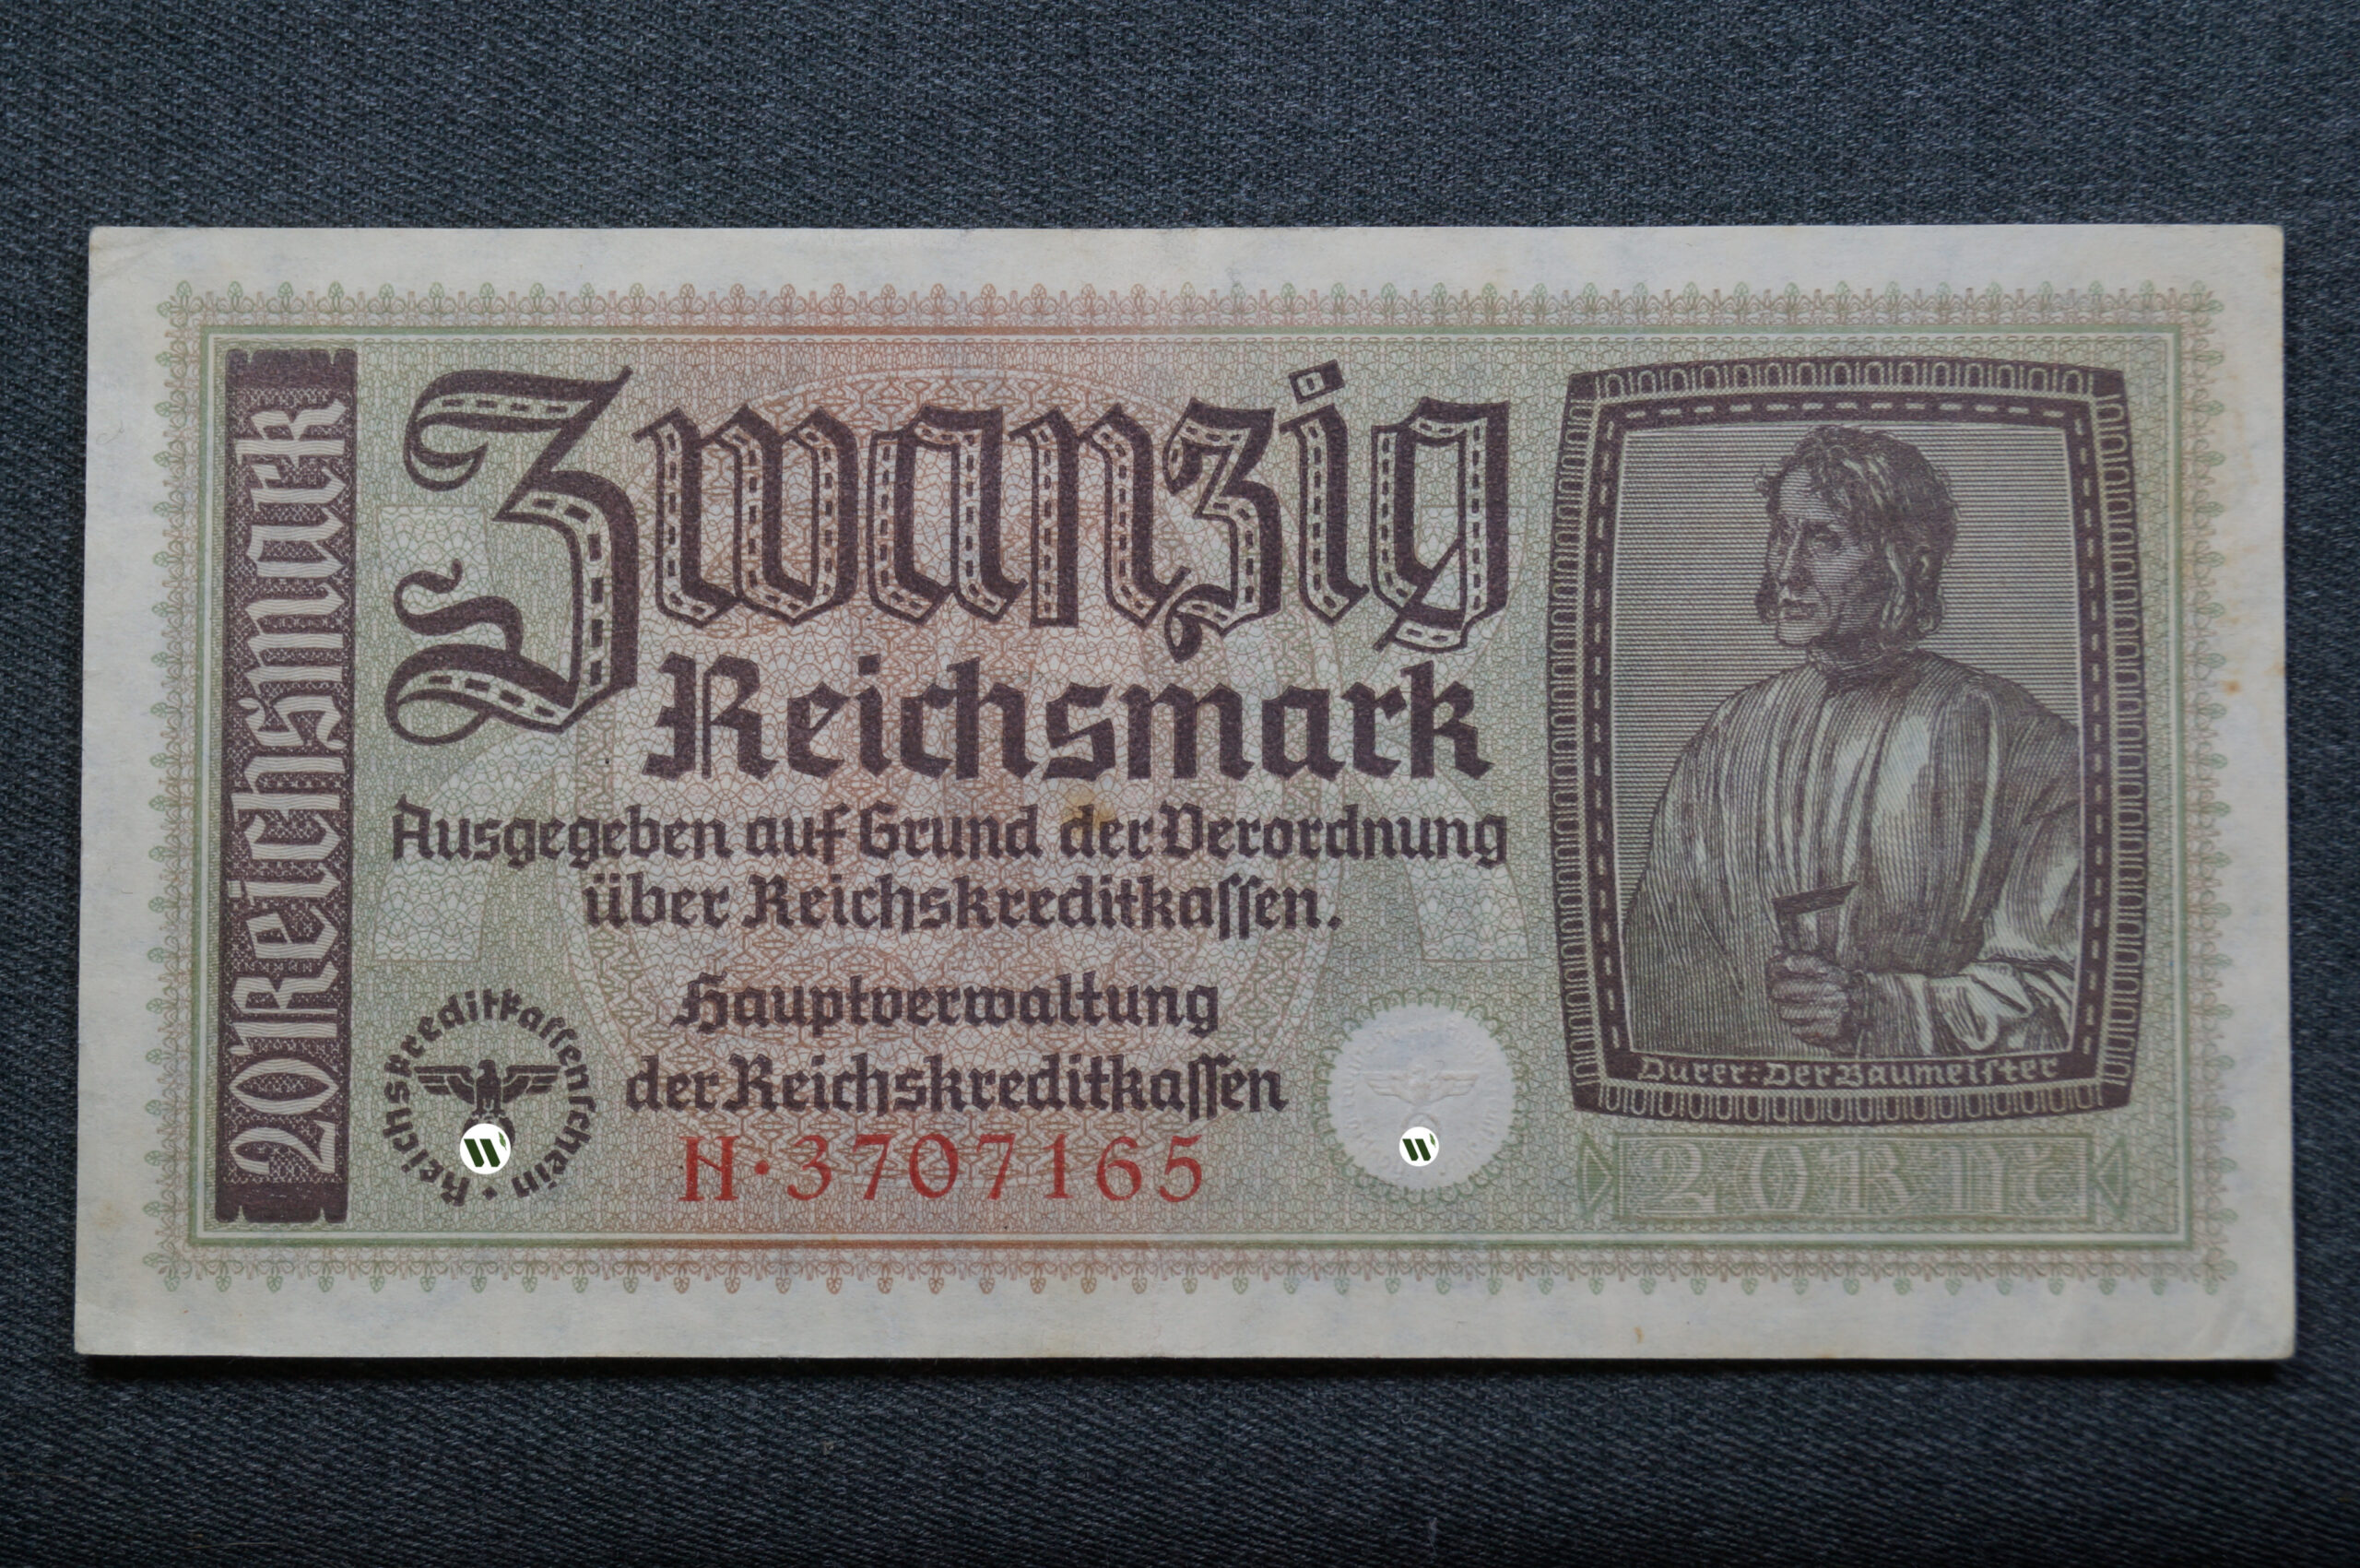 Немецкая банкнота номиналом в 20 рейхсмарок для окупированных территорий, размер 80 на 155мм.